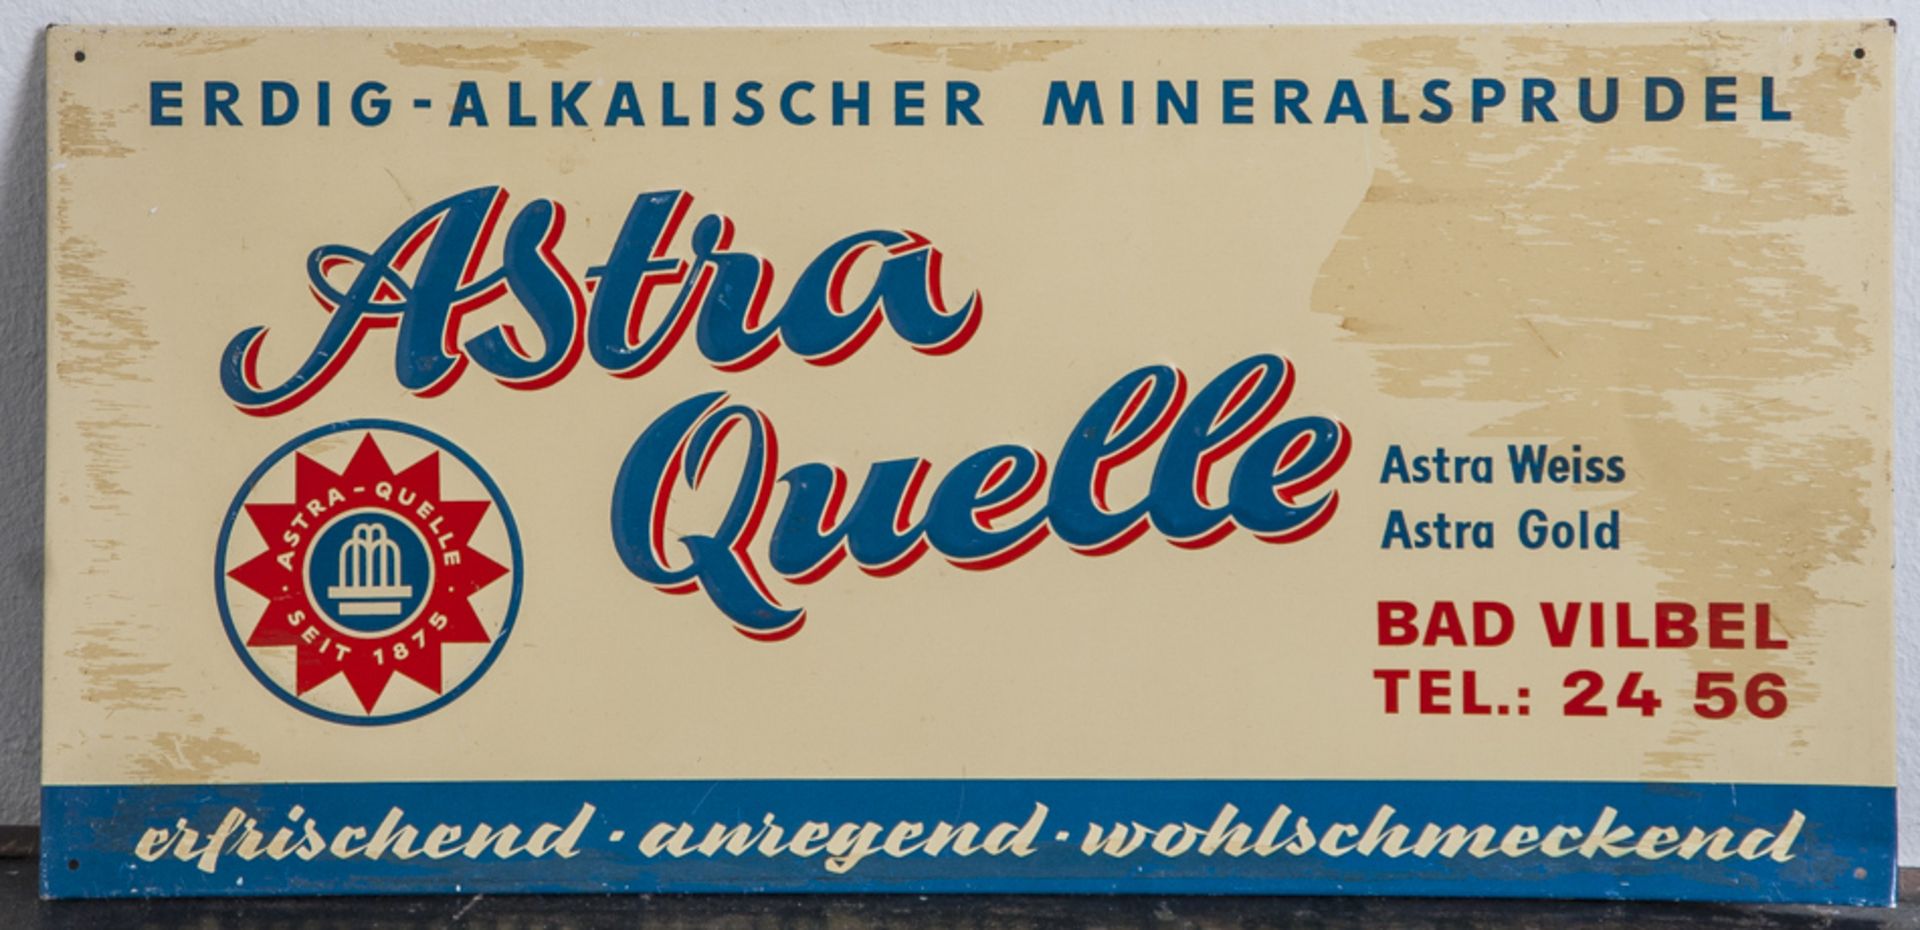 Geprägtes Blechschild, farbig bedruckt, "Erdig - Alkalischer Mineralsprudel - AlsterQuelle Bad